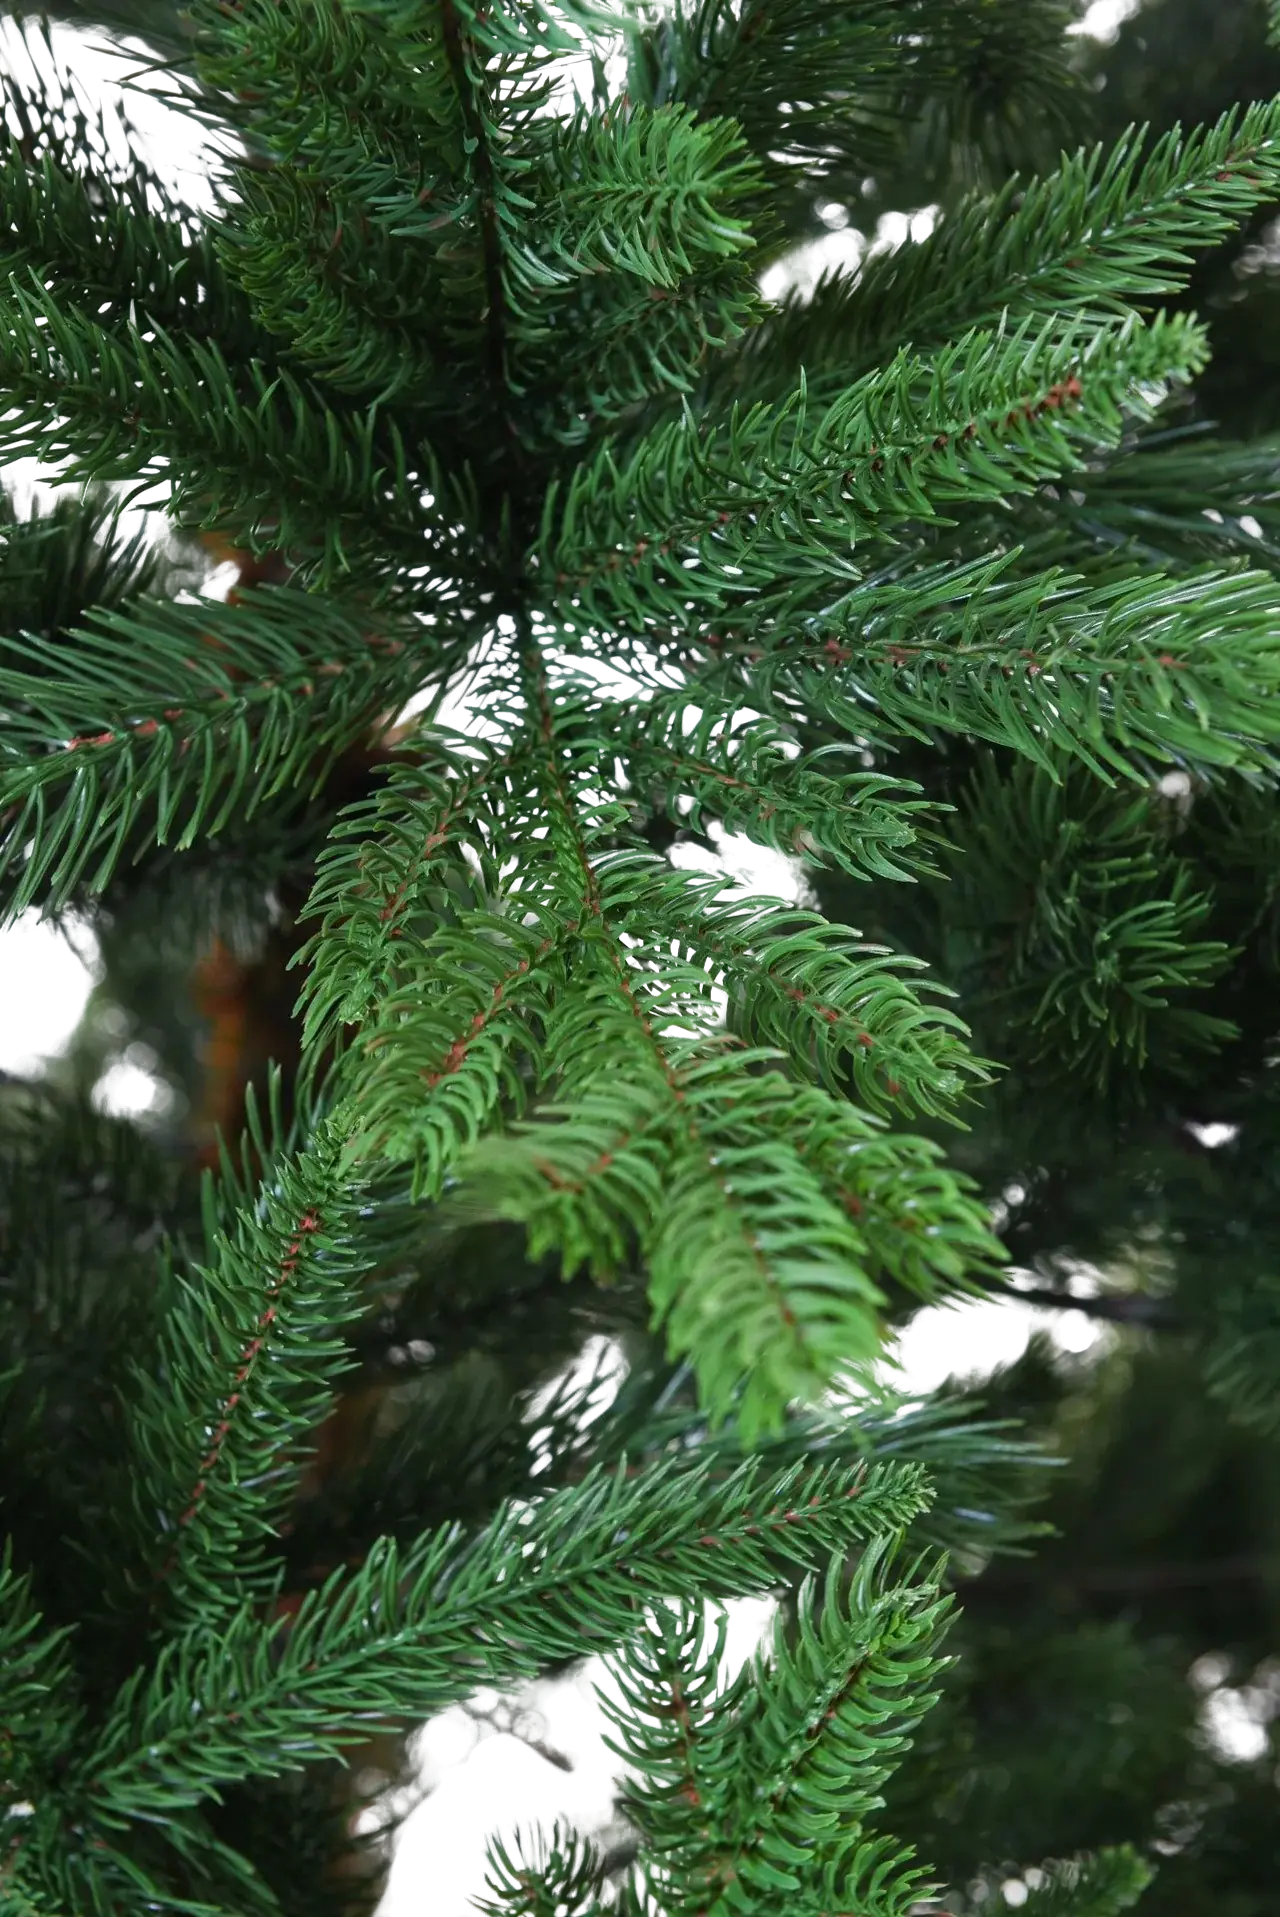 Árbol de Navidad artificial - Lucian | 180 cm